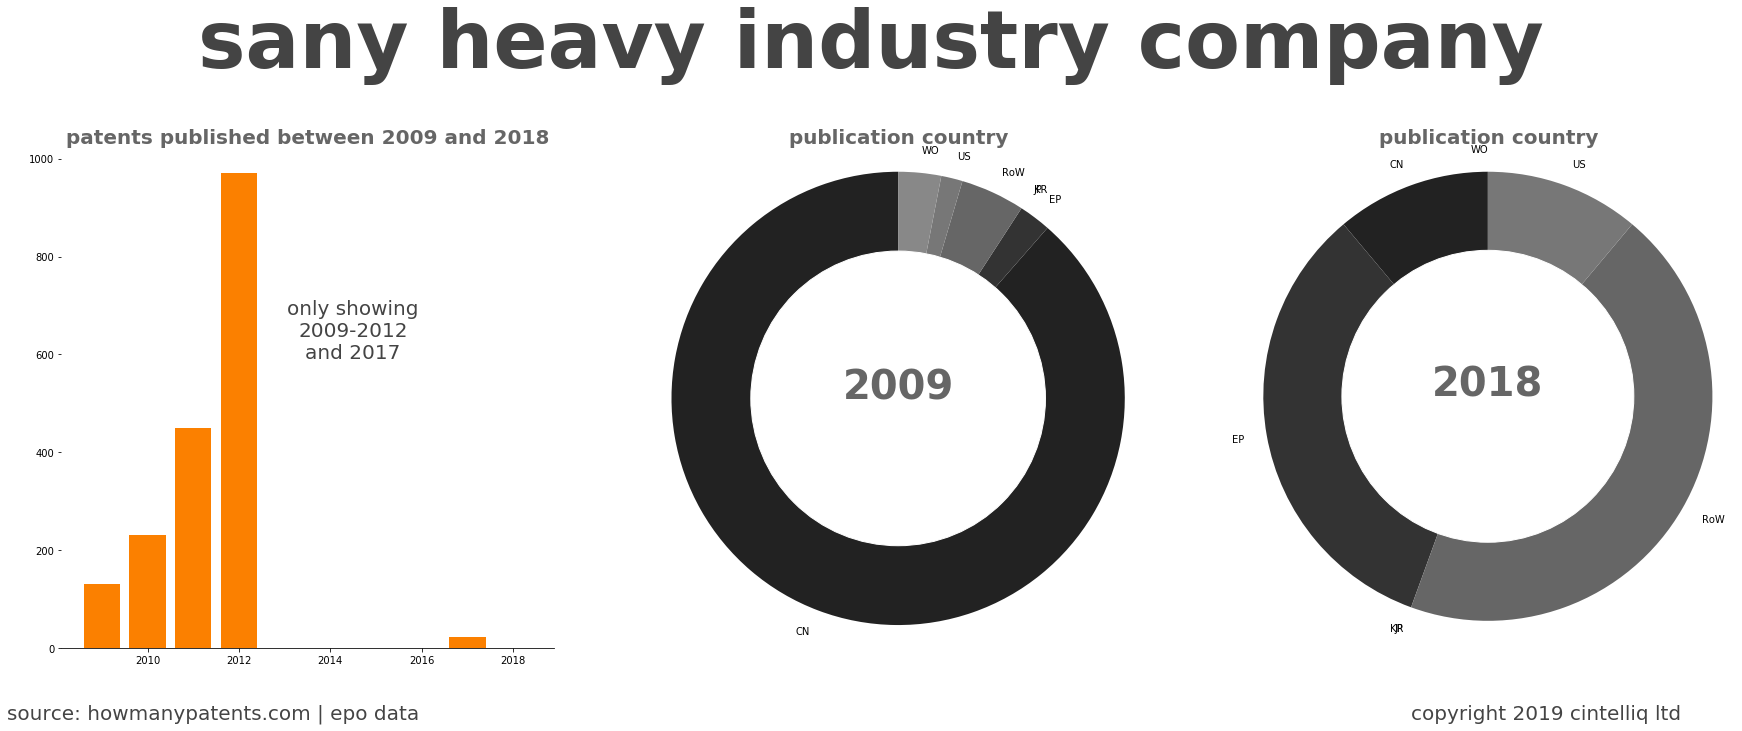 summary of patents for Sany Heavy Industry Company